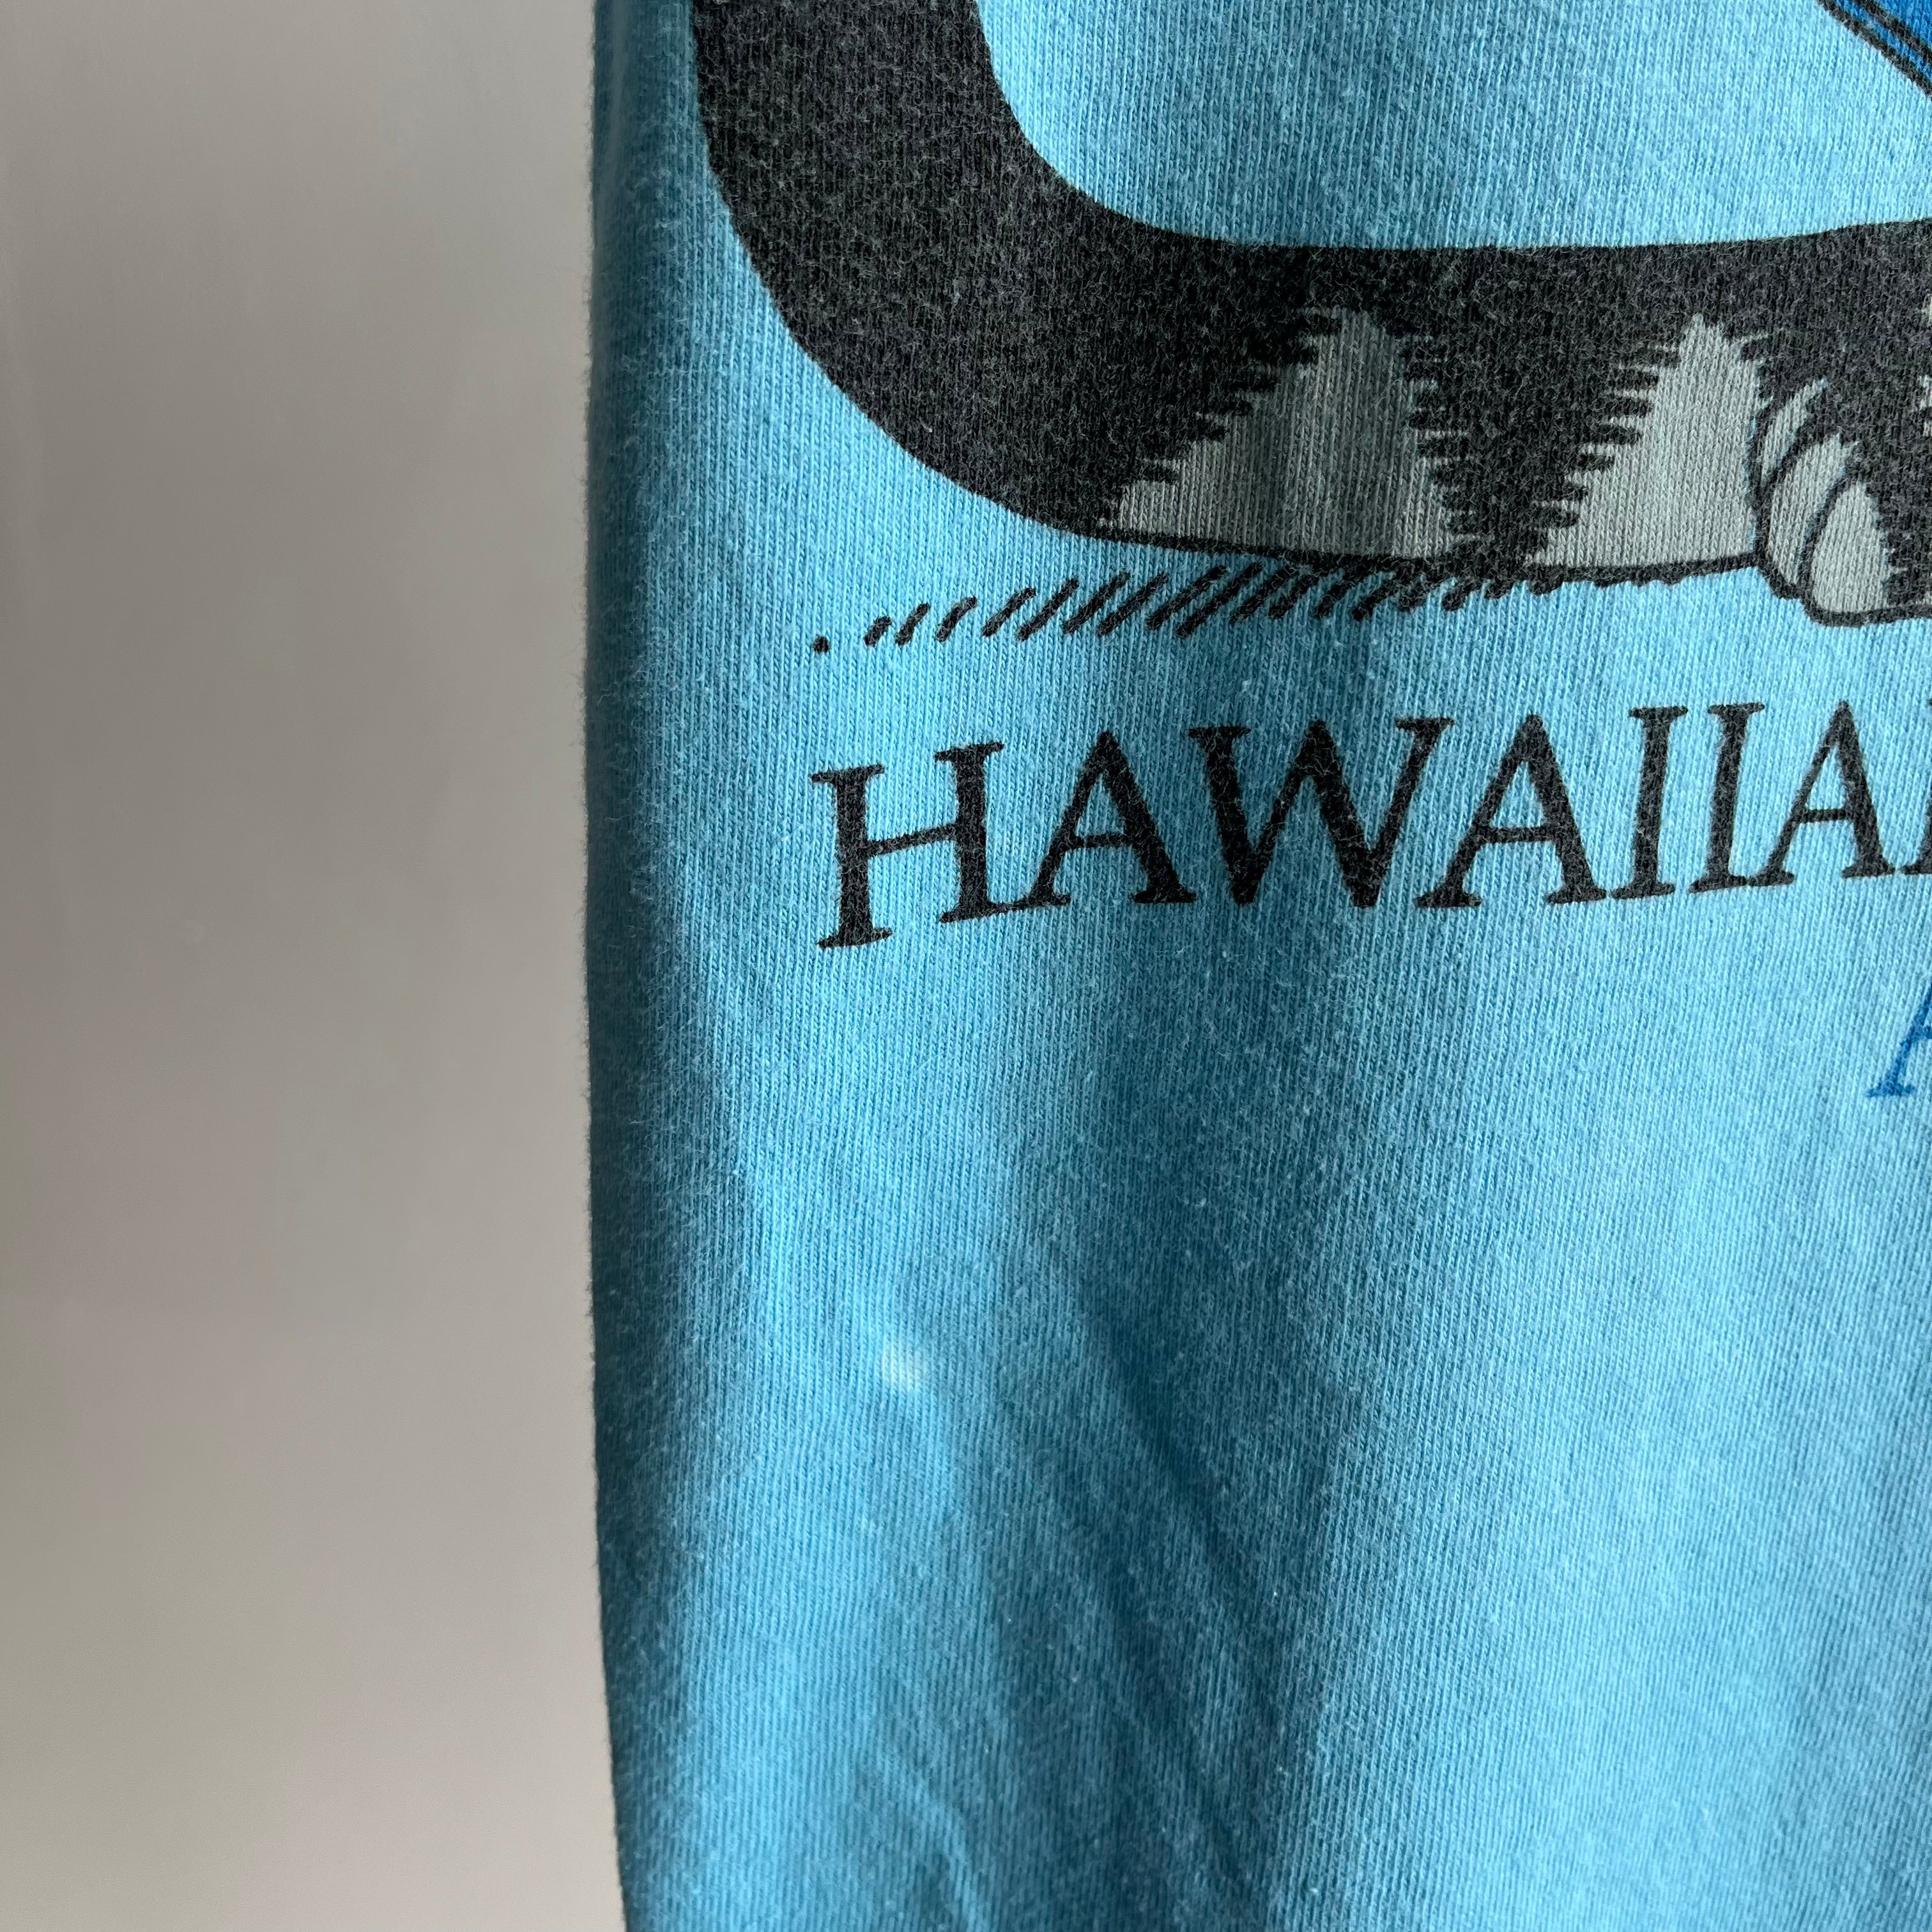 T-shirt avant et arrière de la Hawaiian Humane Society des années 1970